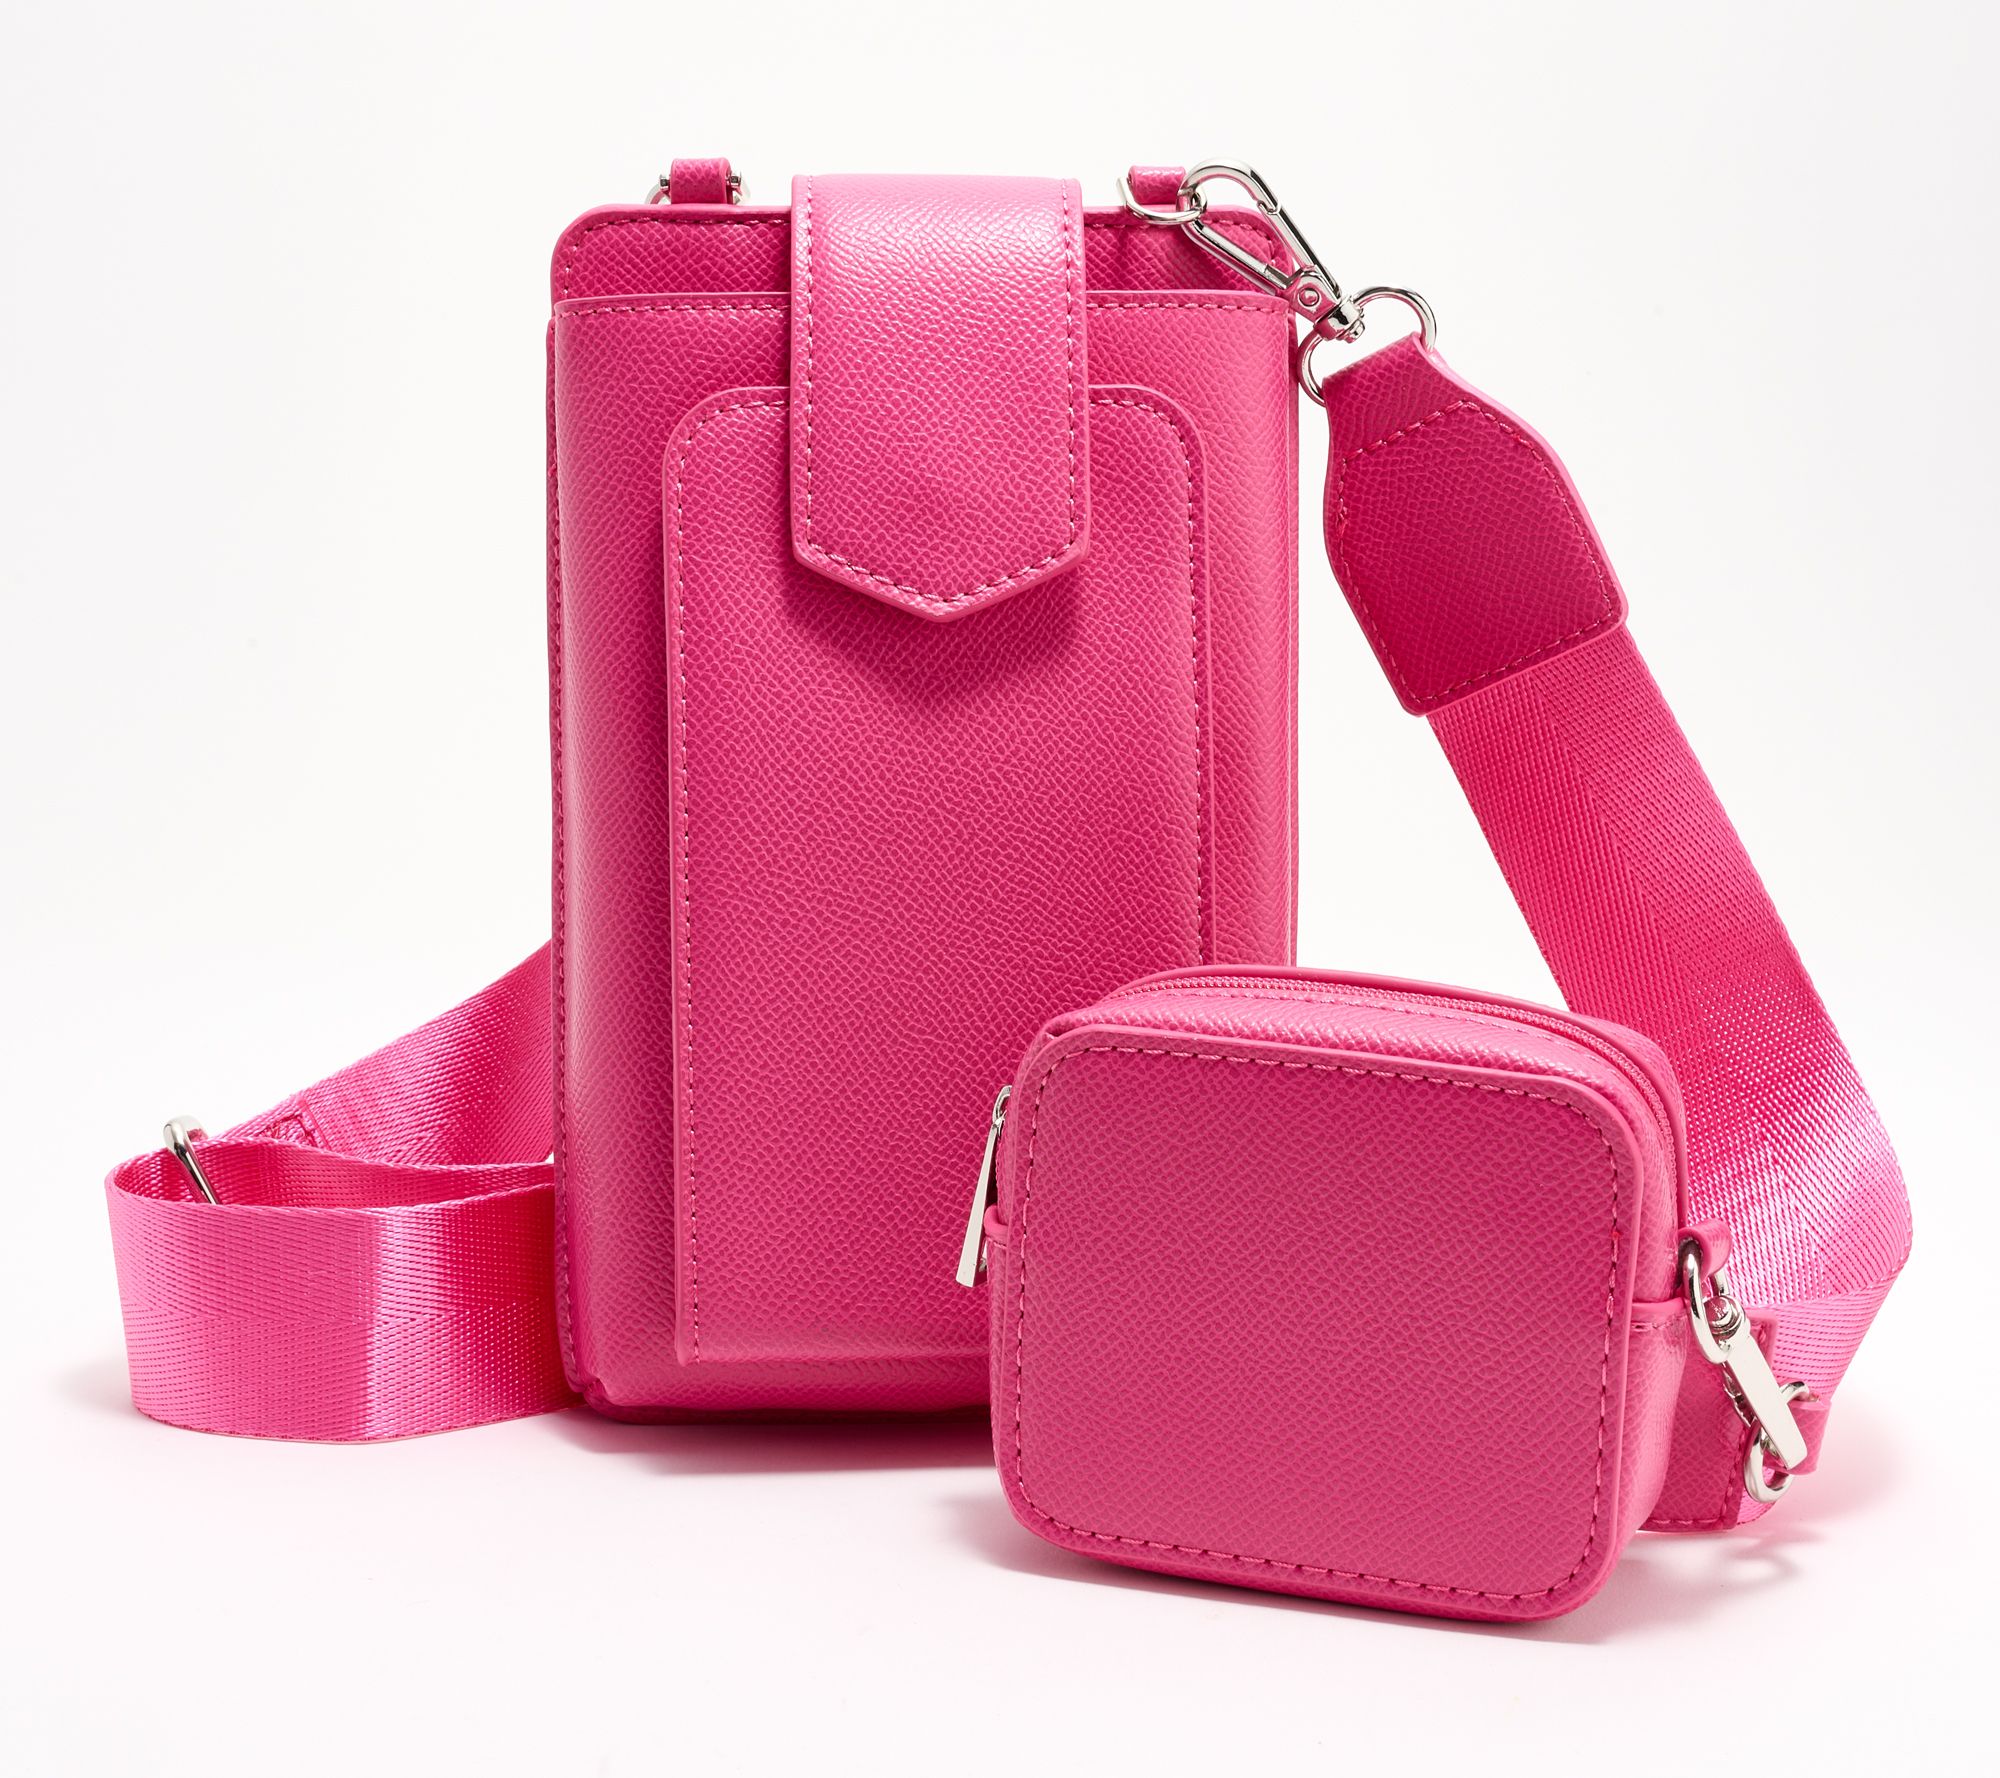 Rebecca Minkoff Pink Leather Crossbody Bag Purse Chain Strap Clip